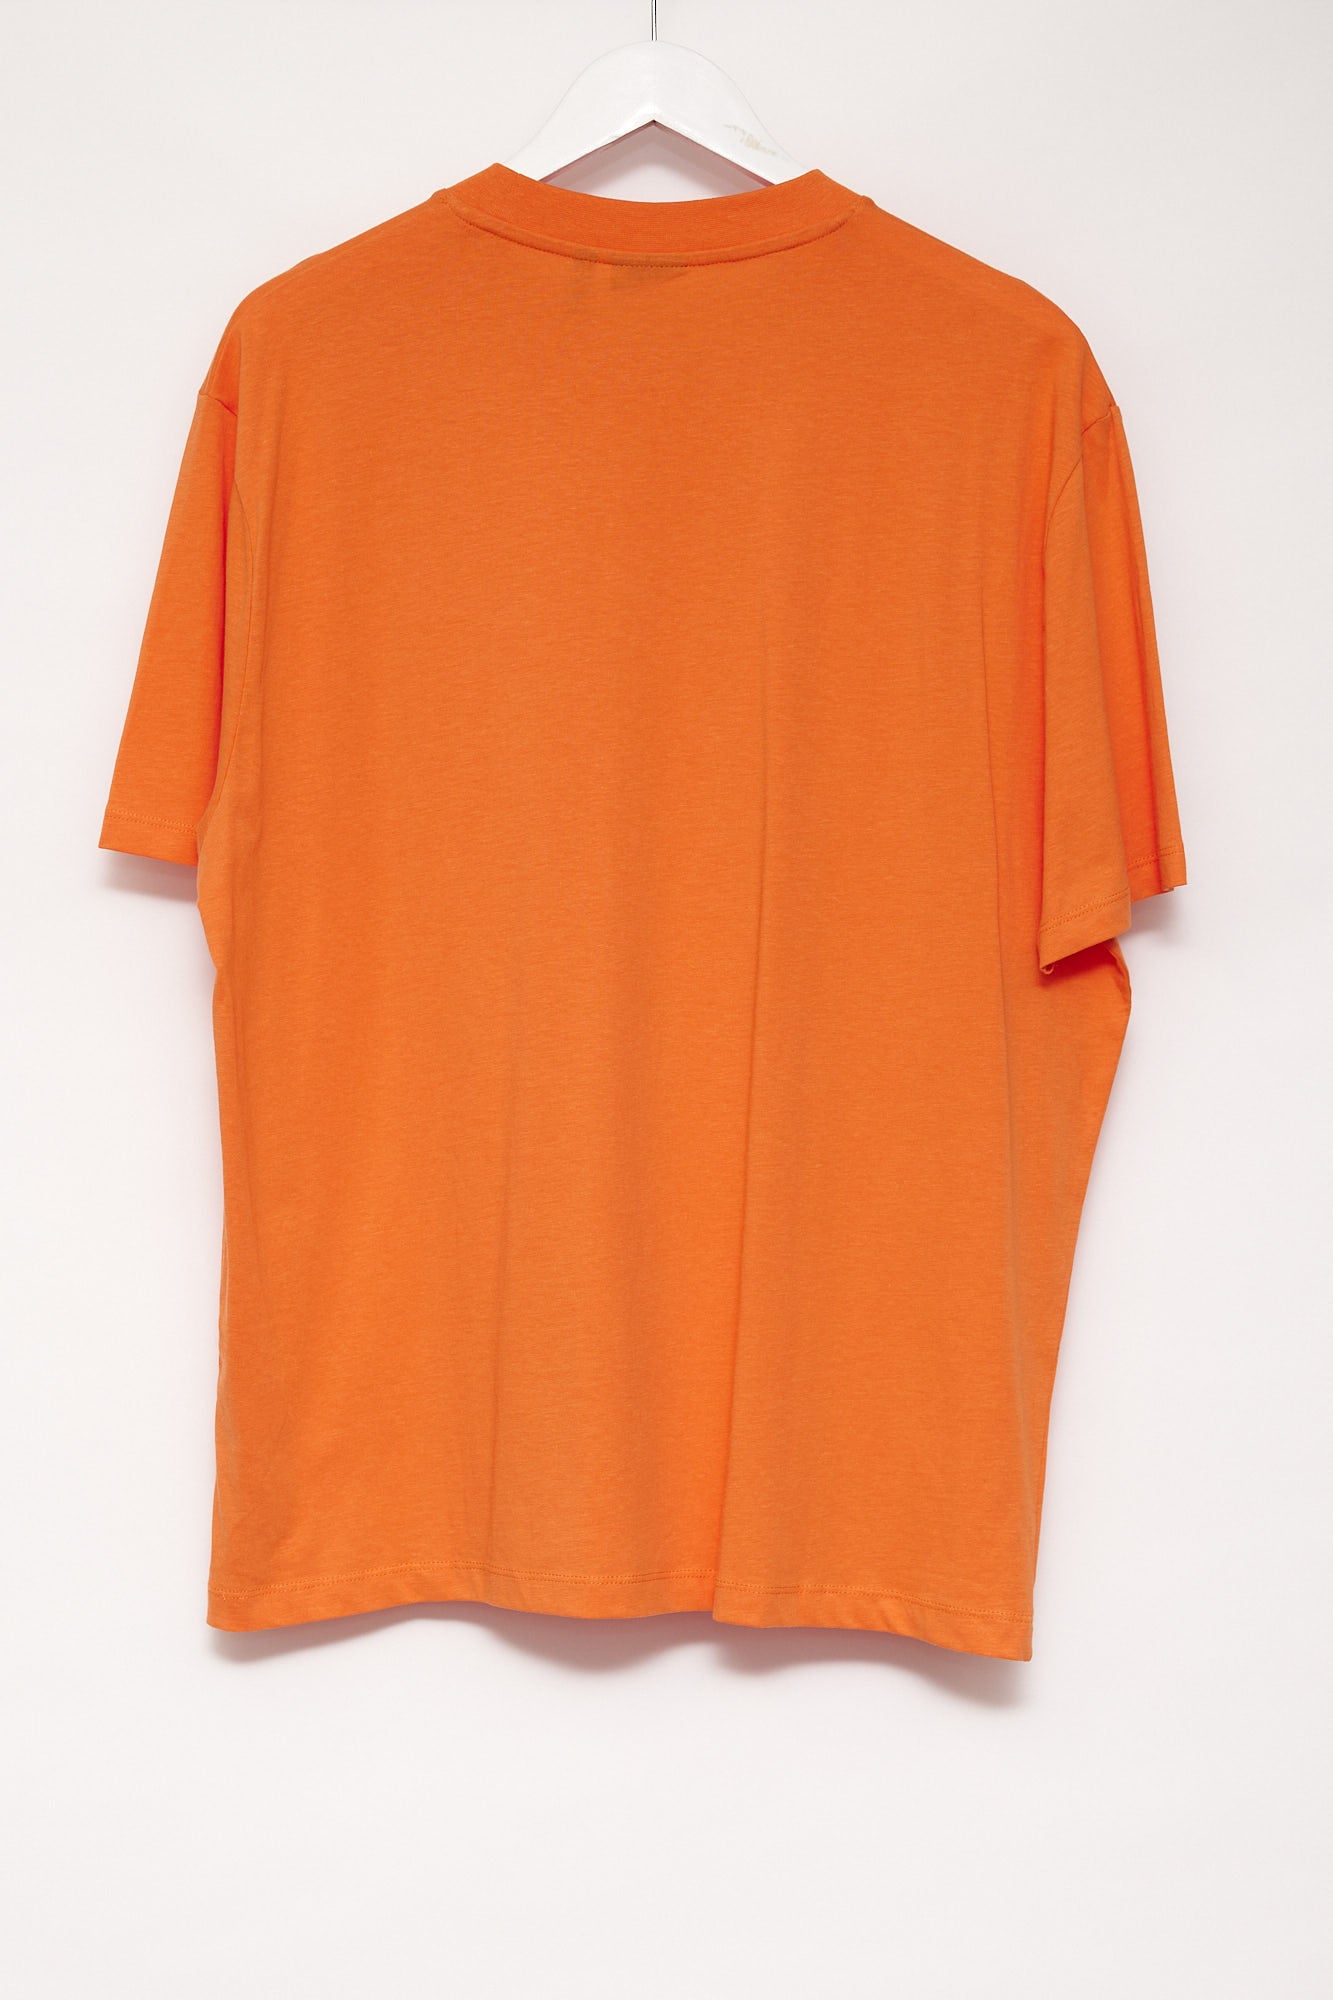 Mens ASOS Orange Oversized T-shirt Size Large